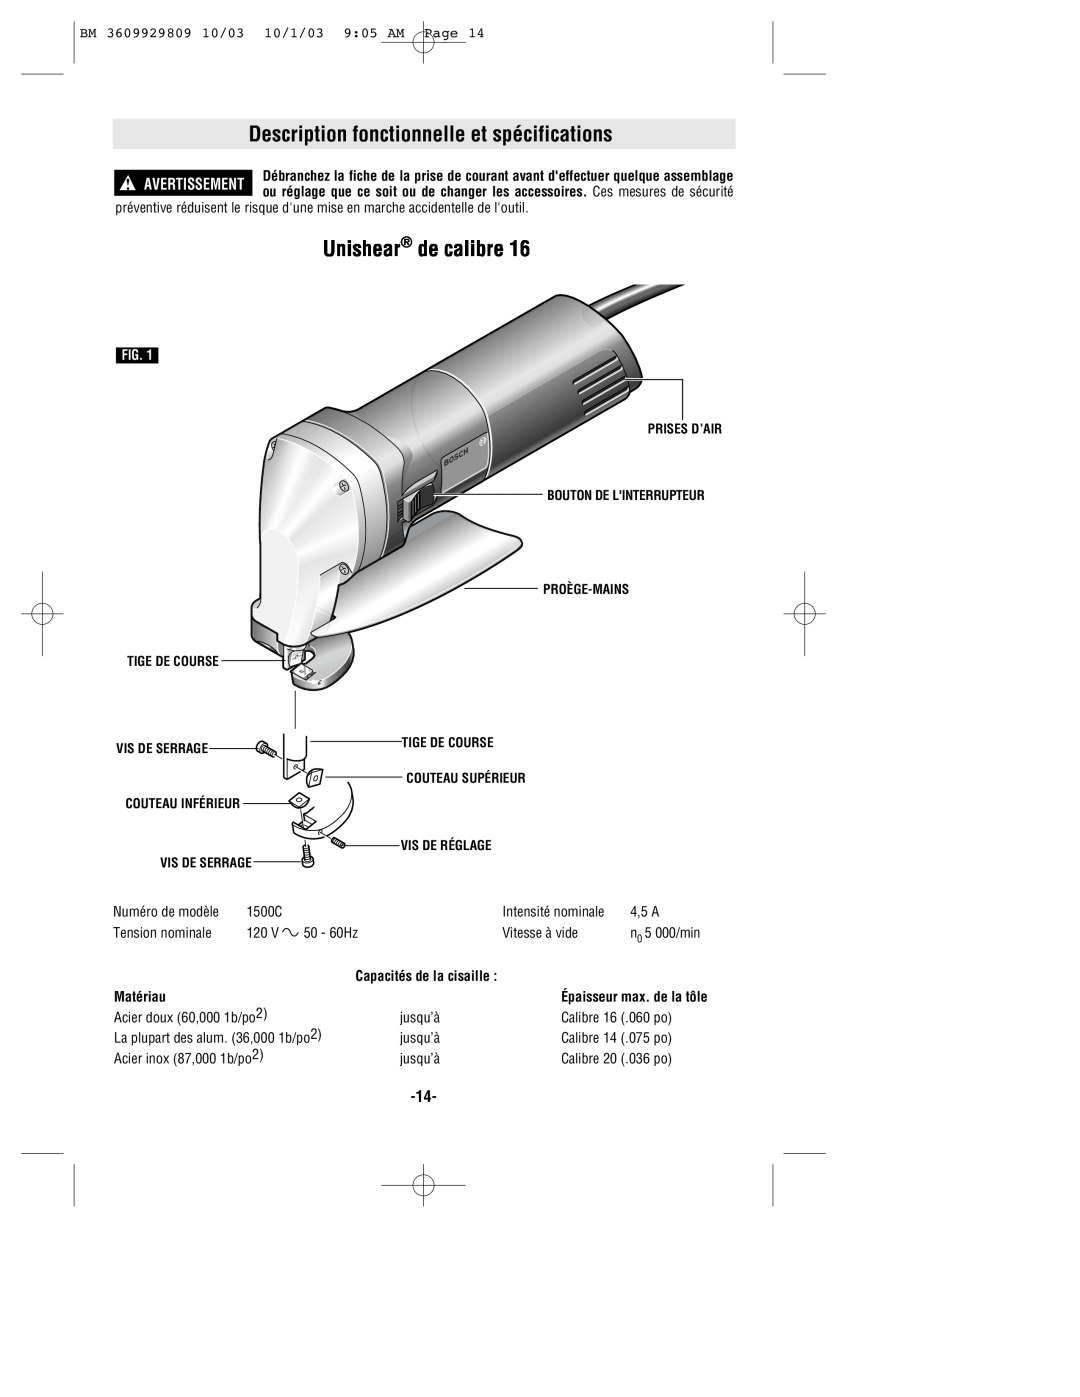 Bosch Power Tools 1500C manual Description fonctionnelle et spécifications, Unishear de calibre, Matériau 